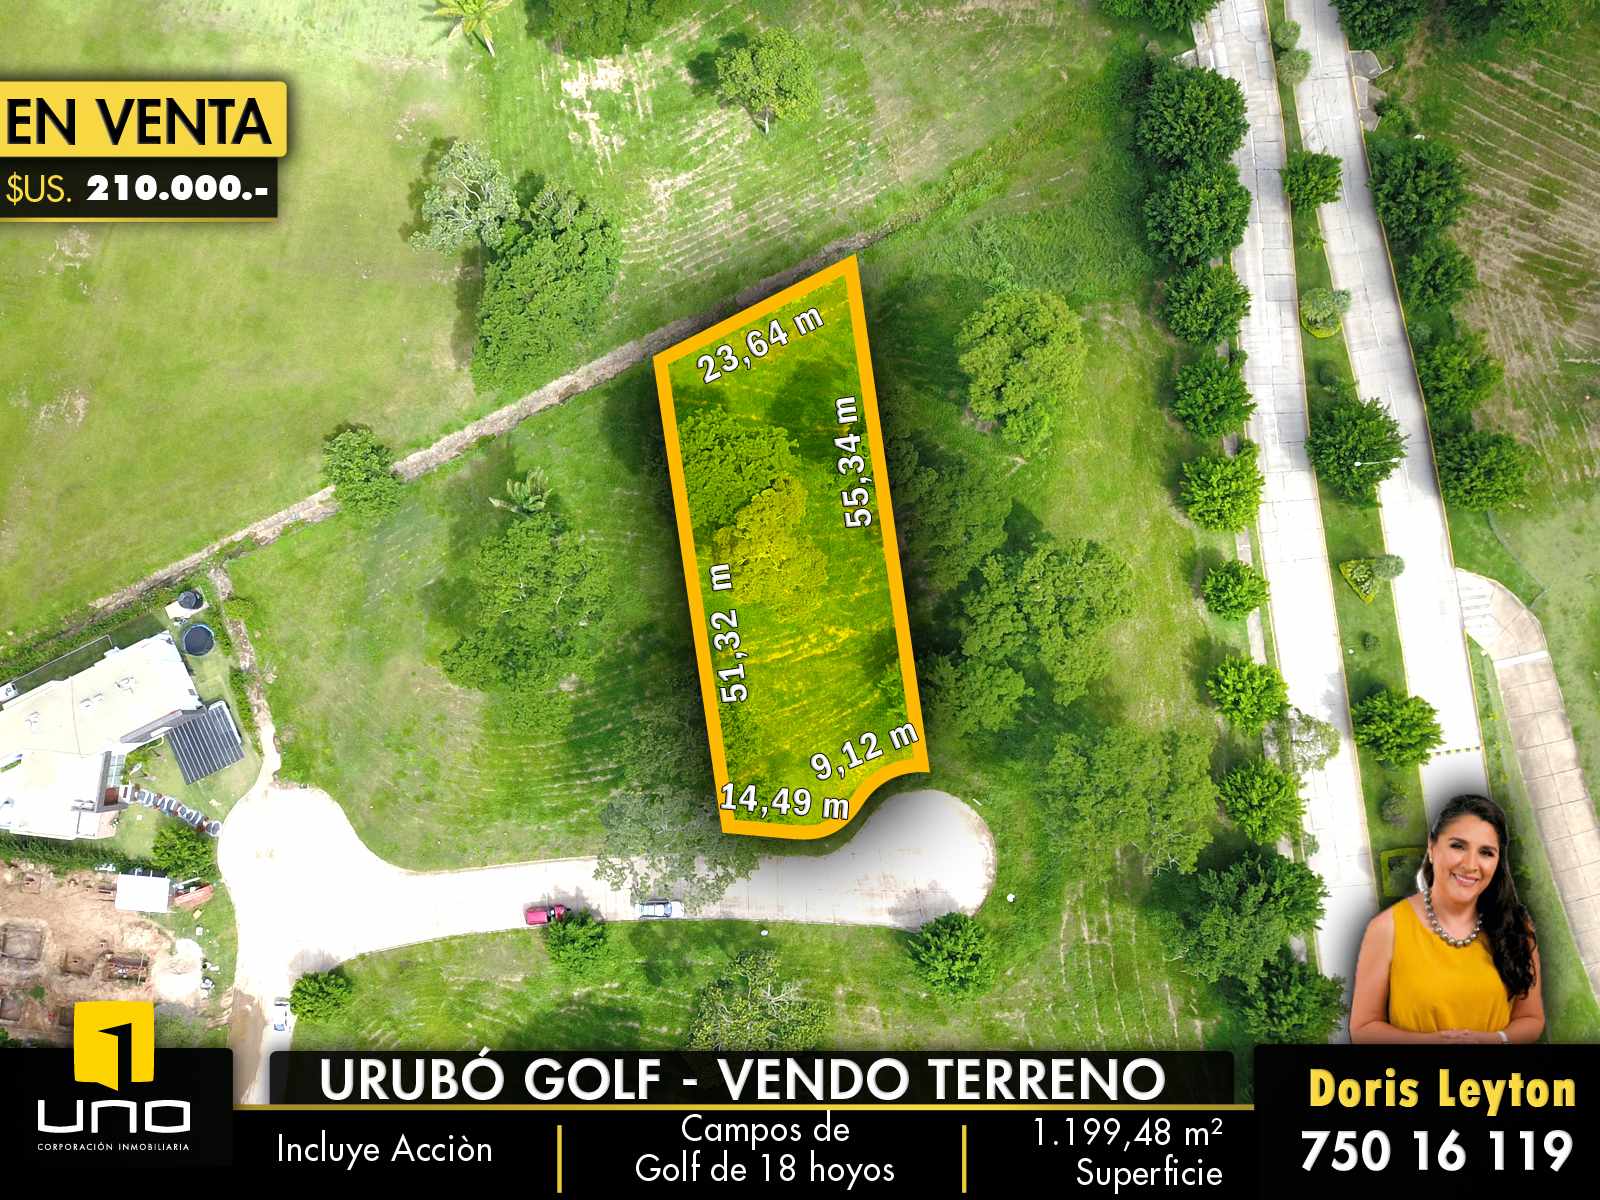 Terreno URUBO GOLF - VENDO TERRENO INCLUYE ACCION Foto 1